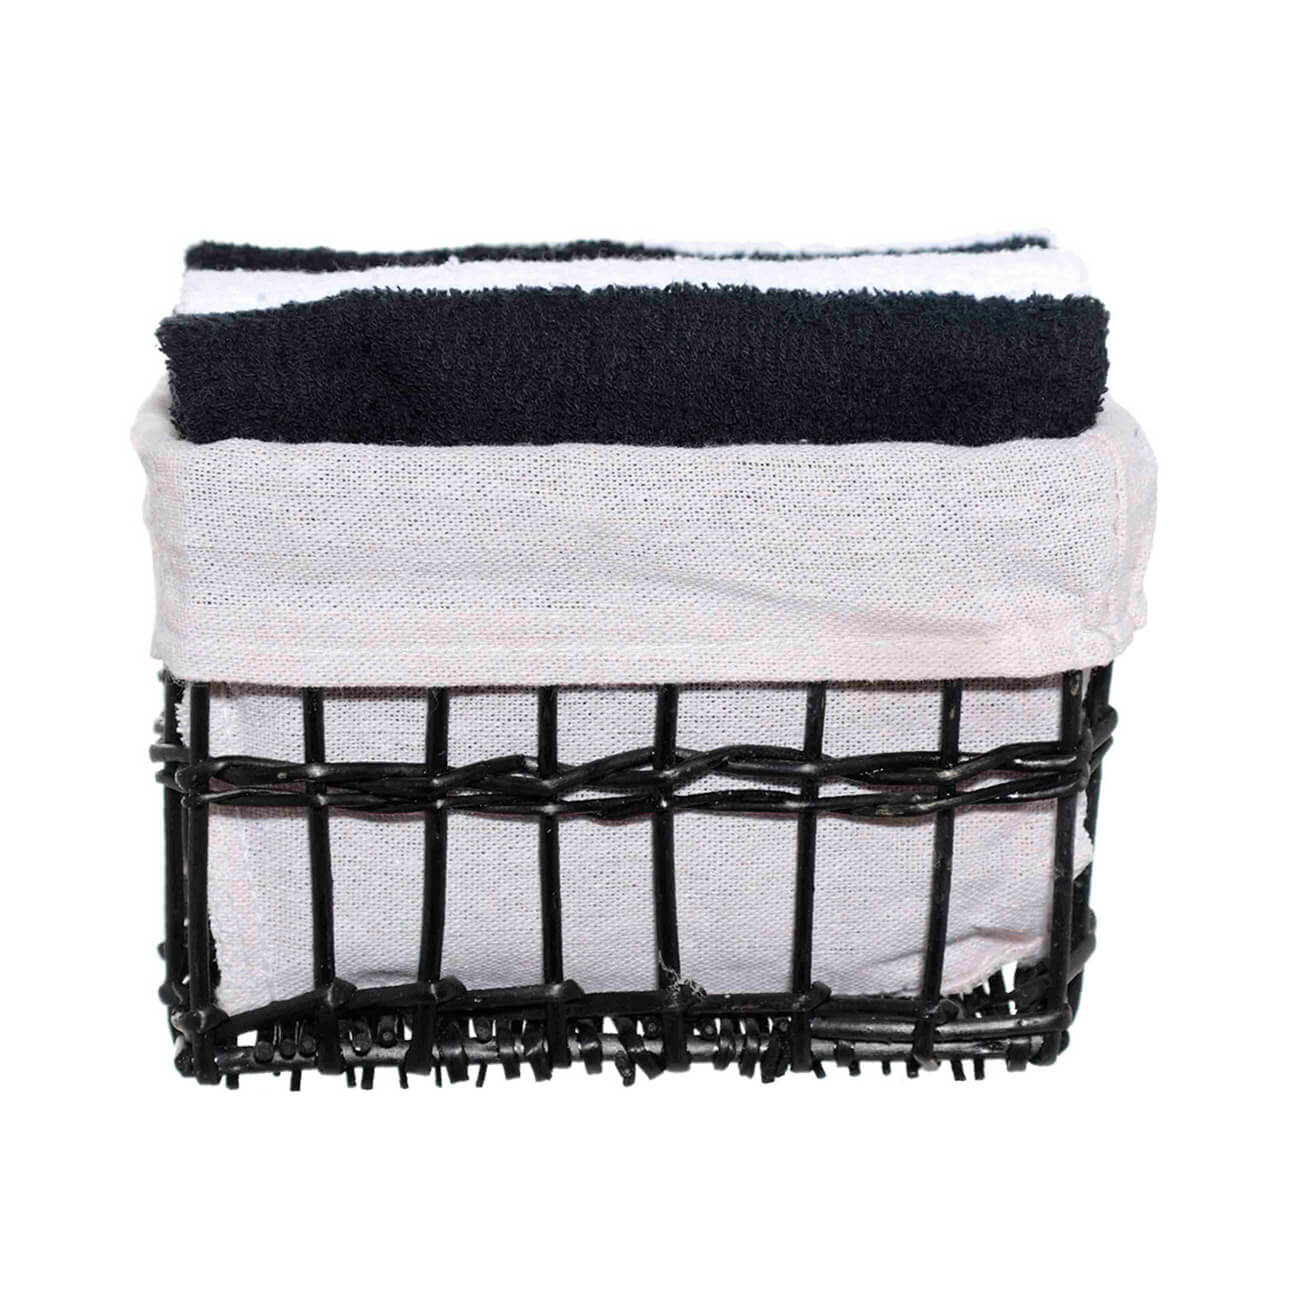 Полотенце, 30х30 см, 4 шт, в корзине, хлопок/лоза, черное/белое, Basket towel полотенце xiaomi zsh youth series 34cm x 76cm белое